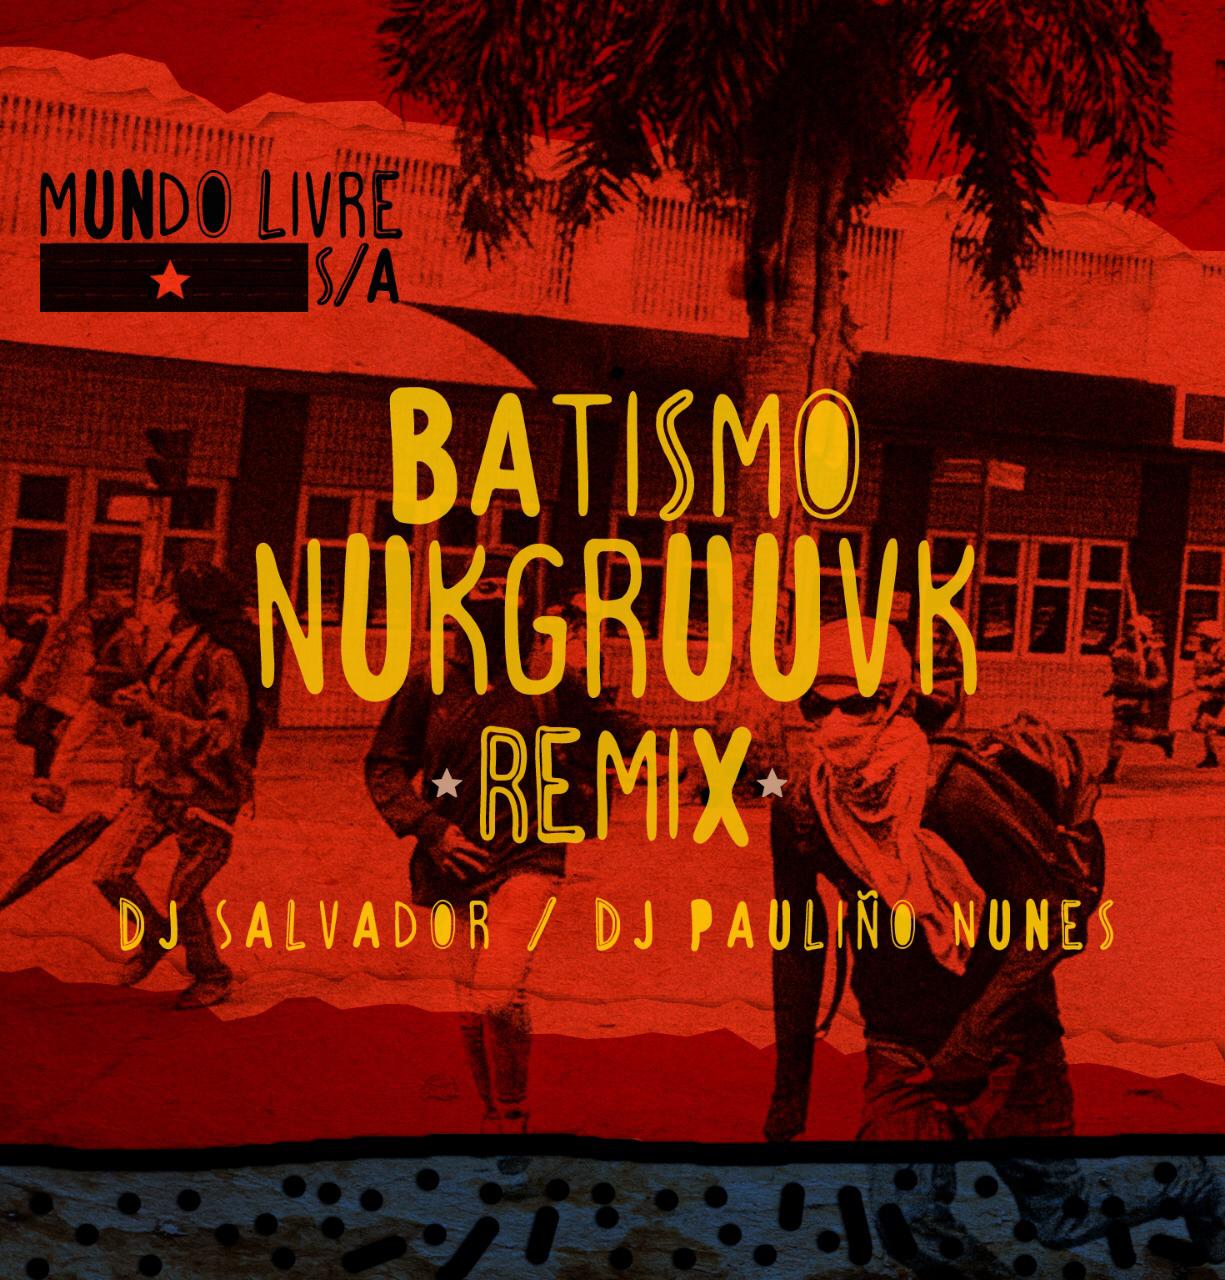 Salvador Santo e Pauliño Nunes lançam remix Batismo Nukgruuvk.